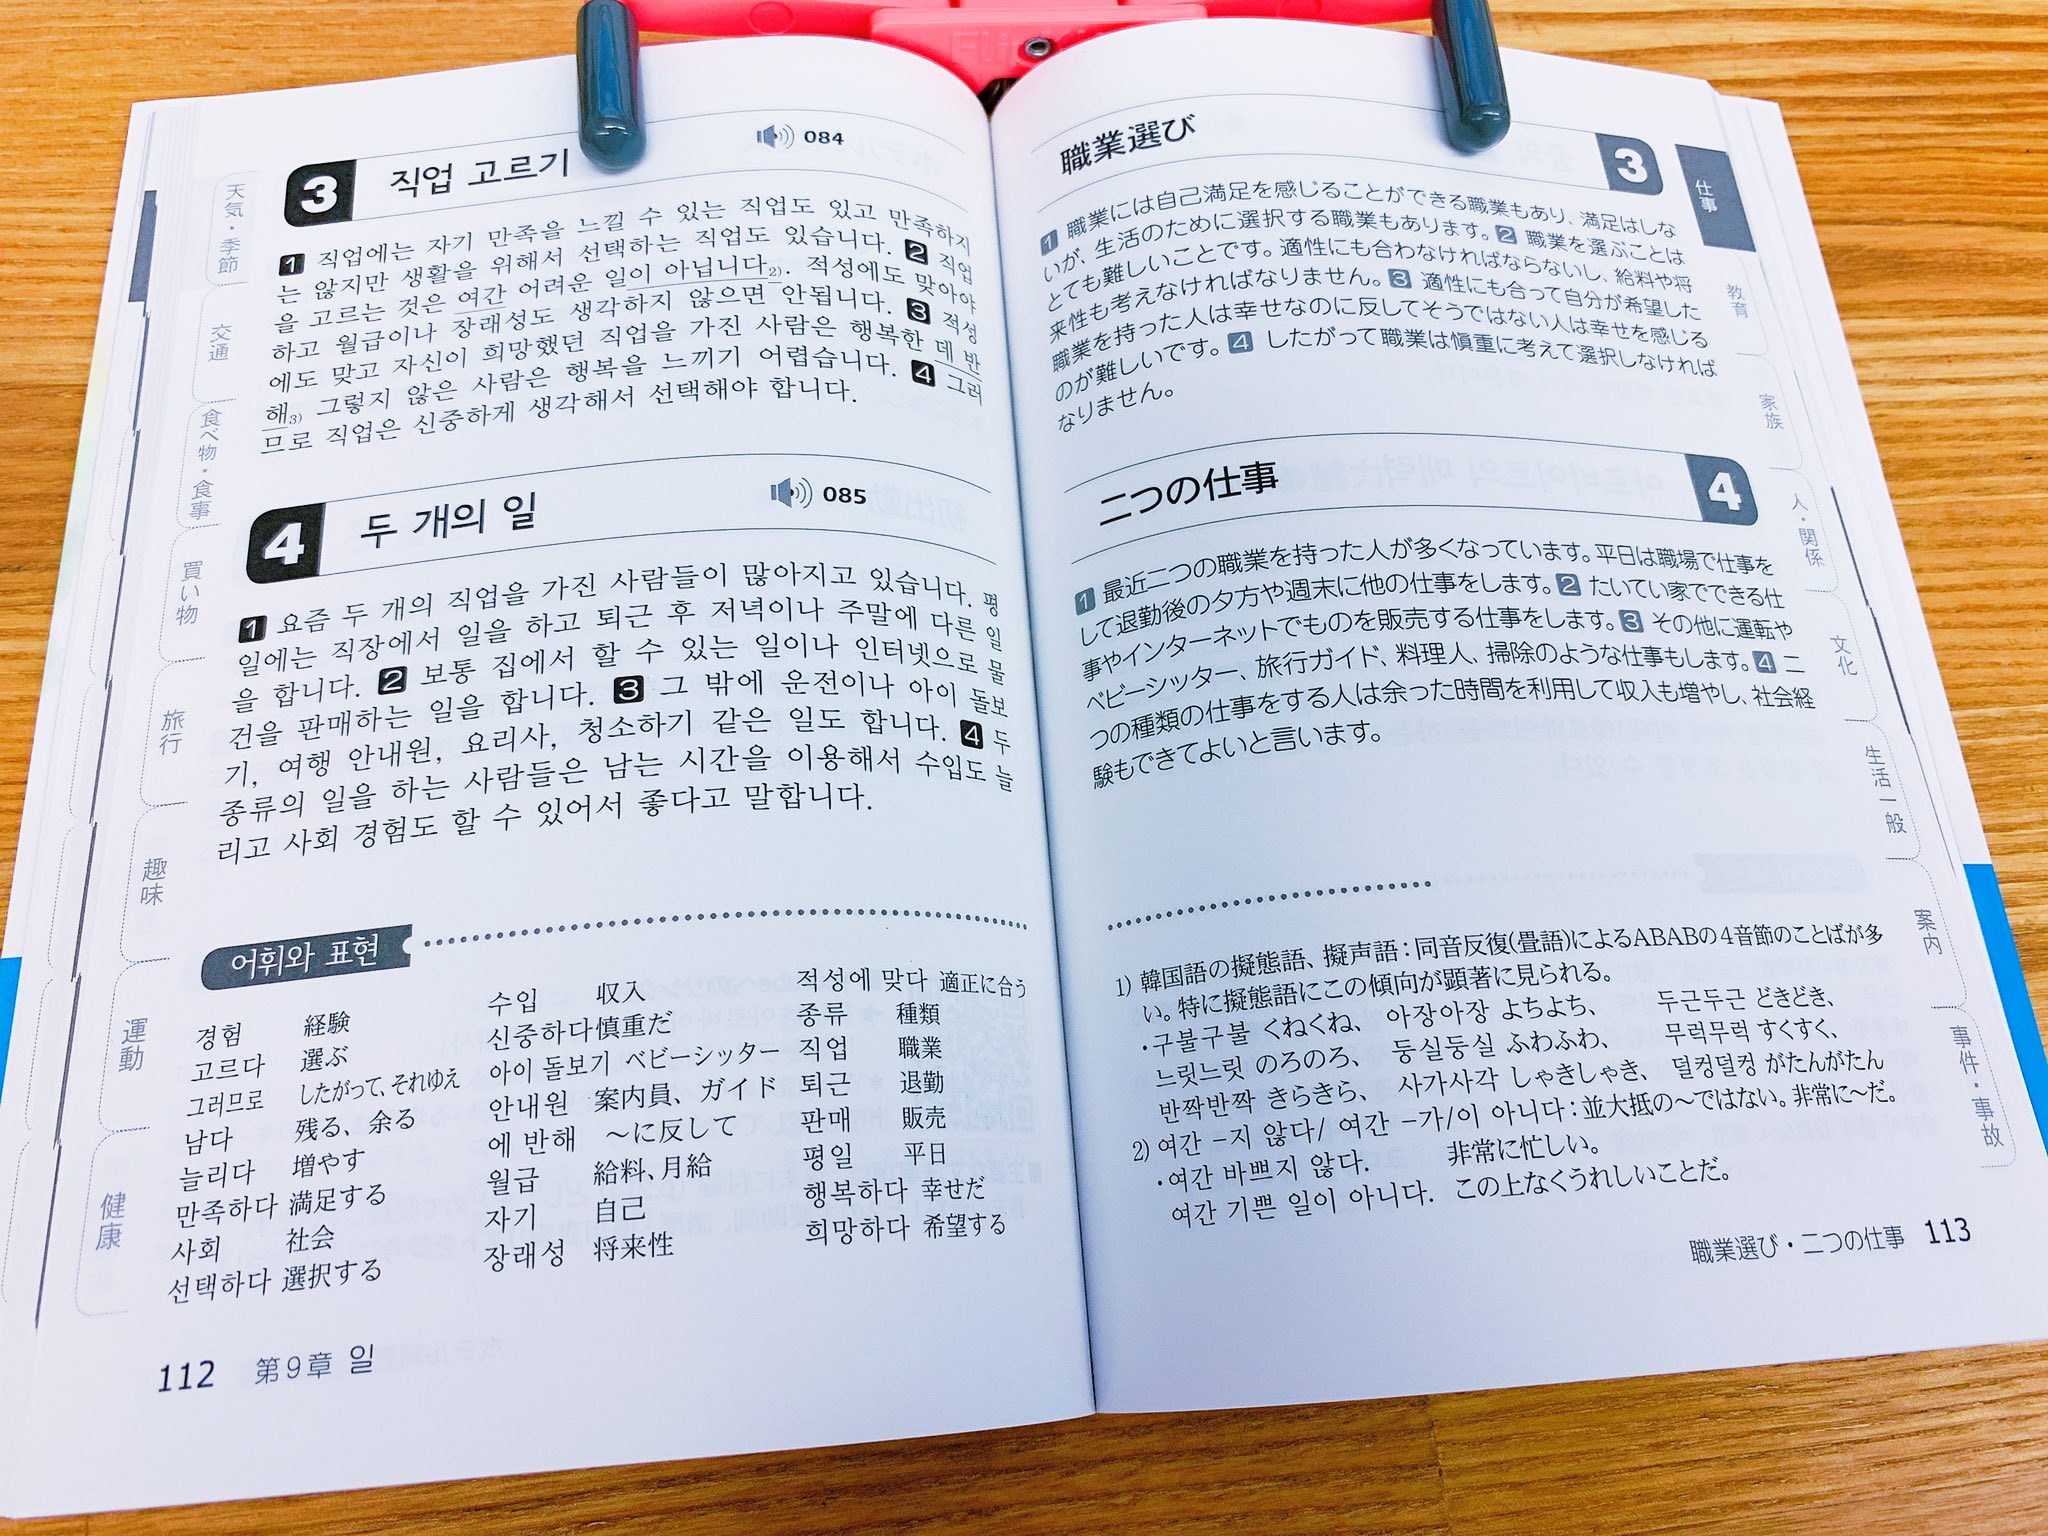 韓国語のhana 韓国語の新刊情報 韓国語中級 読解練習 Topik ハン検中級レベル 白帝社 これはパダスギ練習にぴったりな教材ではないですか 長さが適当で話題がたくさんあるので飽きずに勉強出来そうですよ 今週末には書店に並び始めるのでない